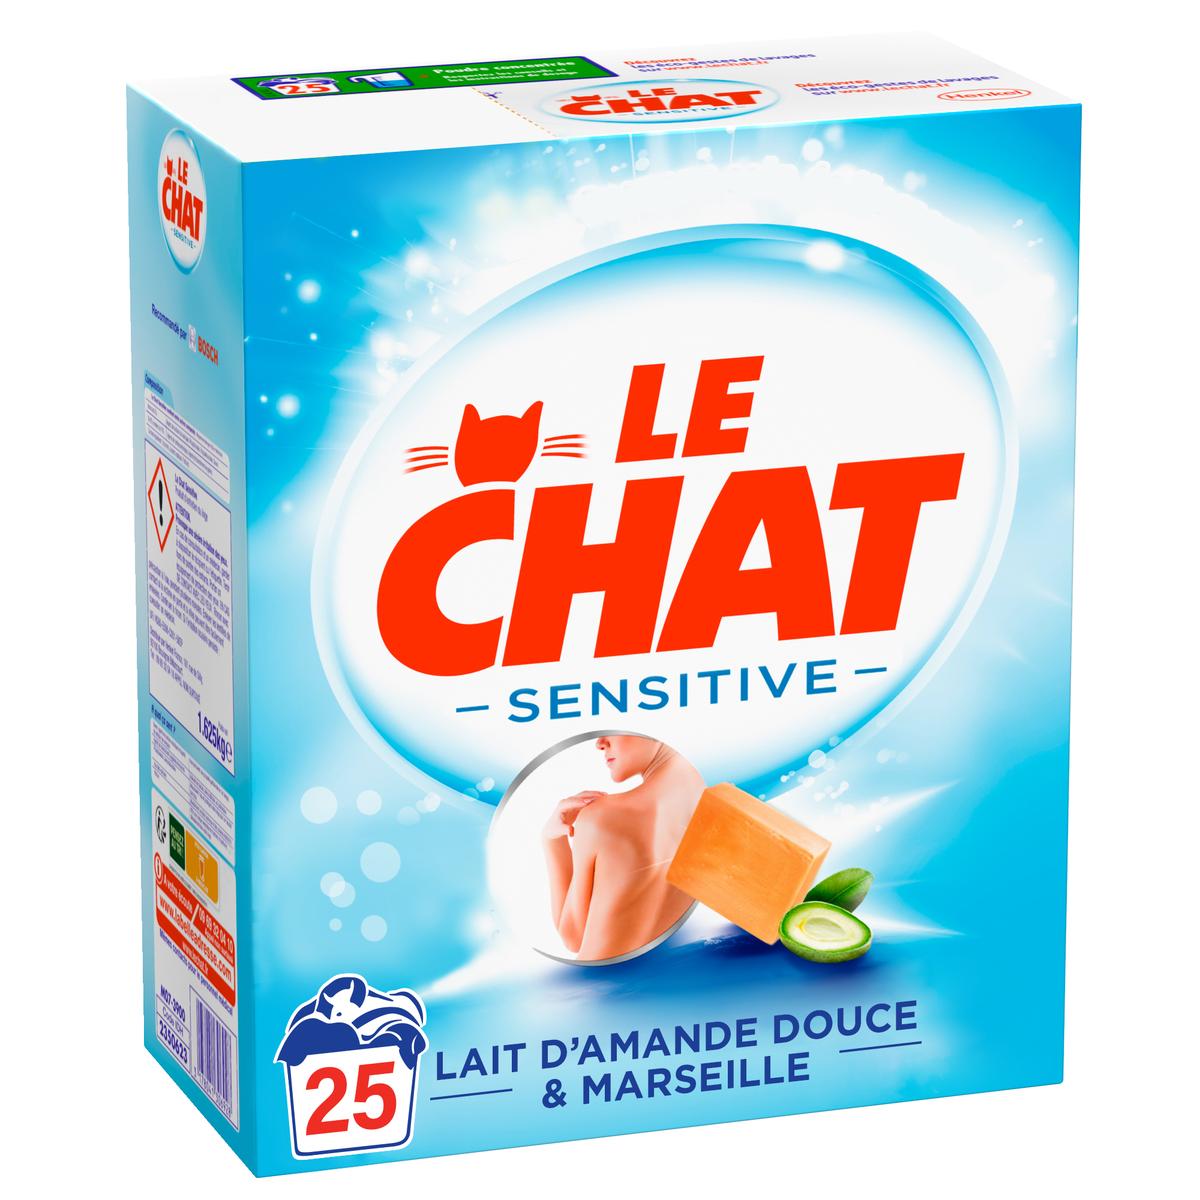 Le Chat Sensitive – Lessive Liquide Hypoallergénique – 100 Lavages